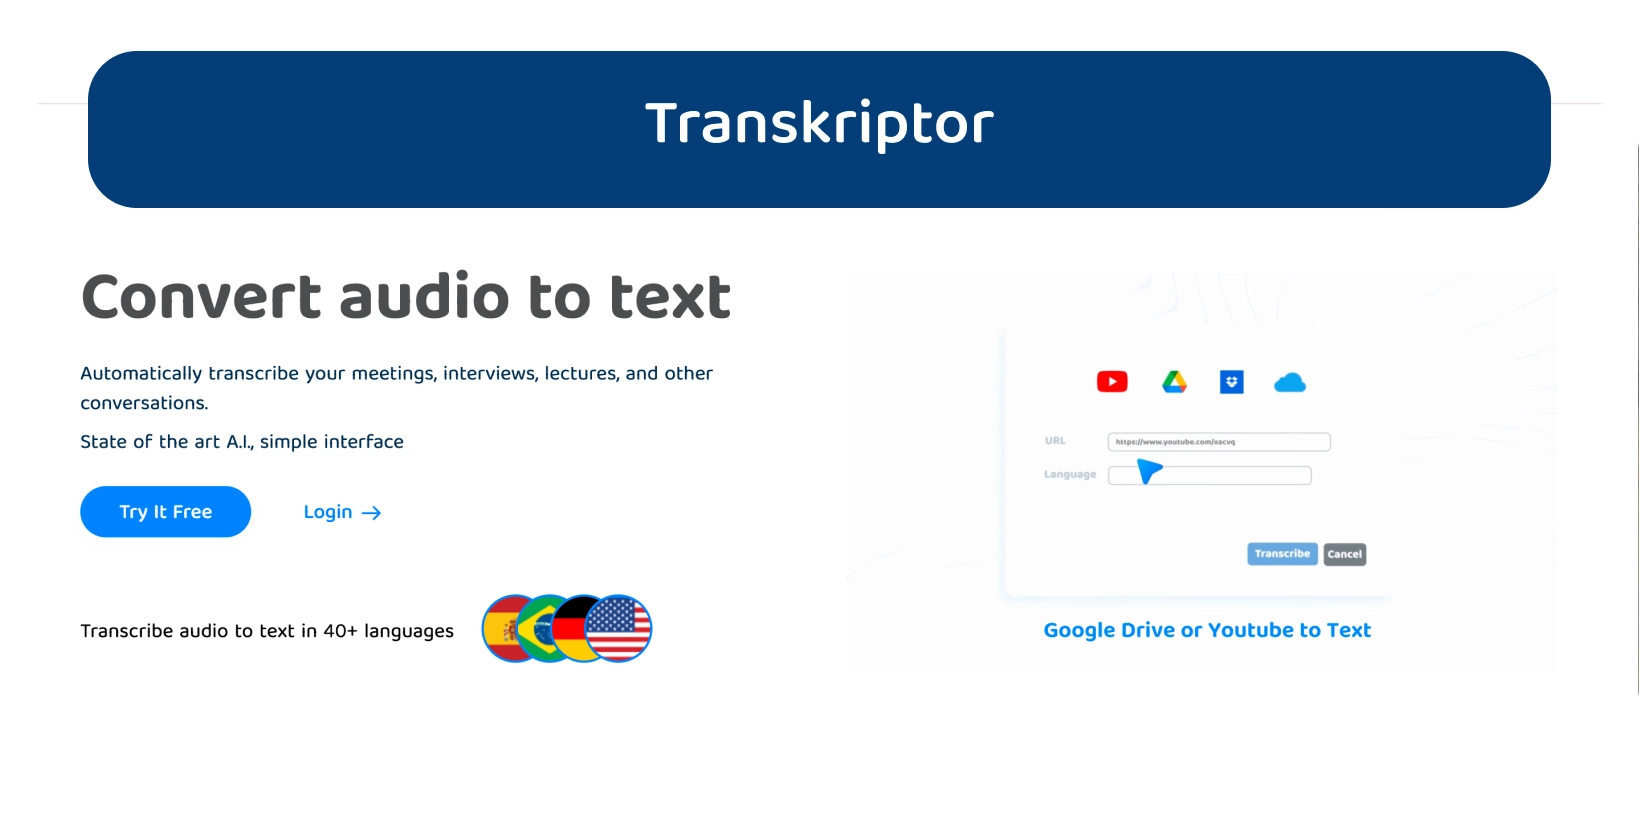 Dasbor Transkriptor menampilkan fitur konversi audio ke teks untuk transkripsi yang efisien.